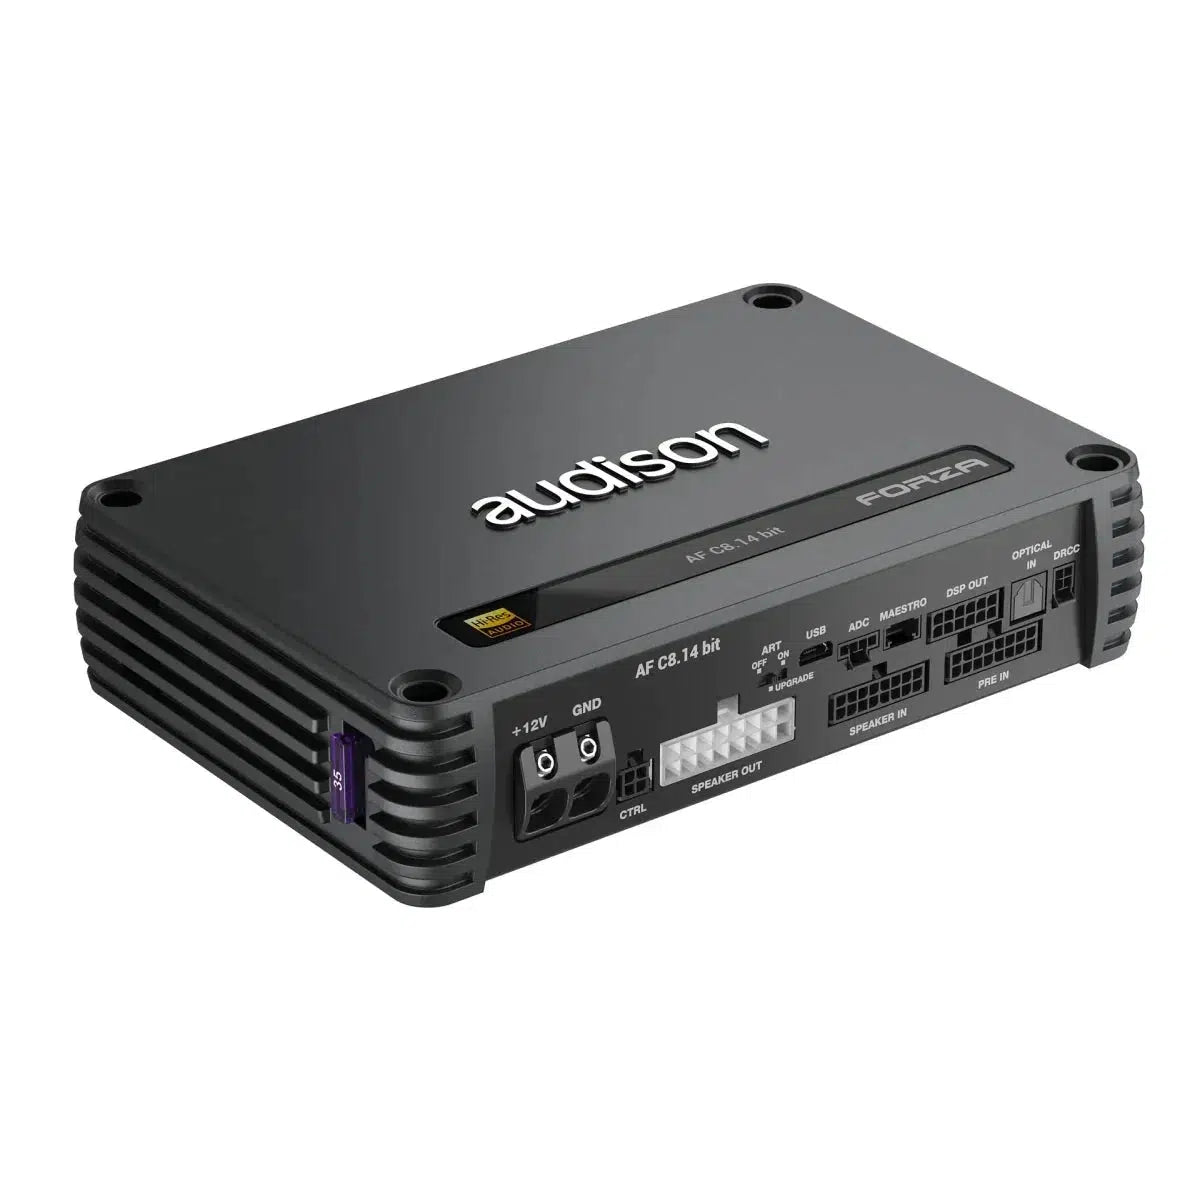 Audison-Forza AF C8.14 bit-8-canaux DSP-Amplificateur-Masori.fr